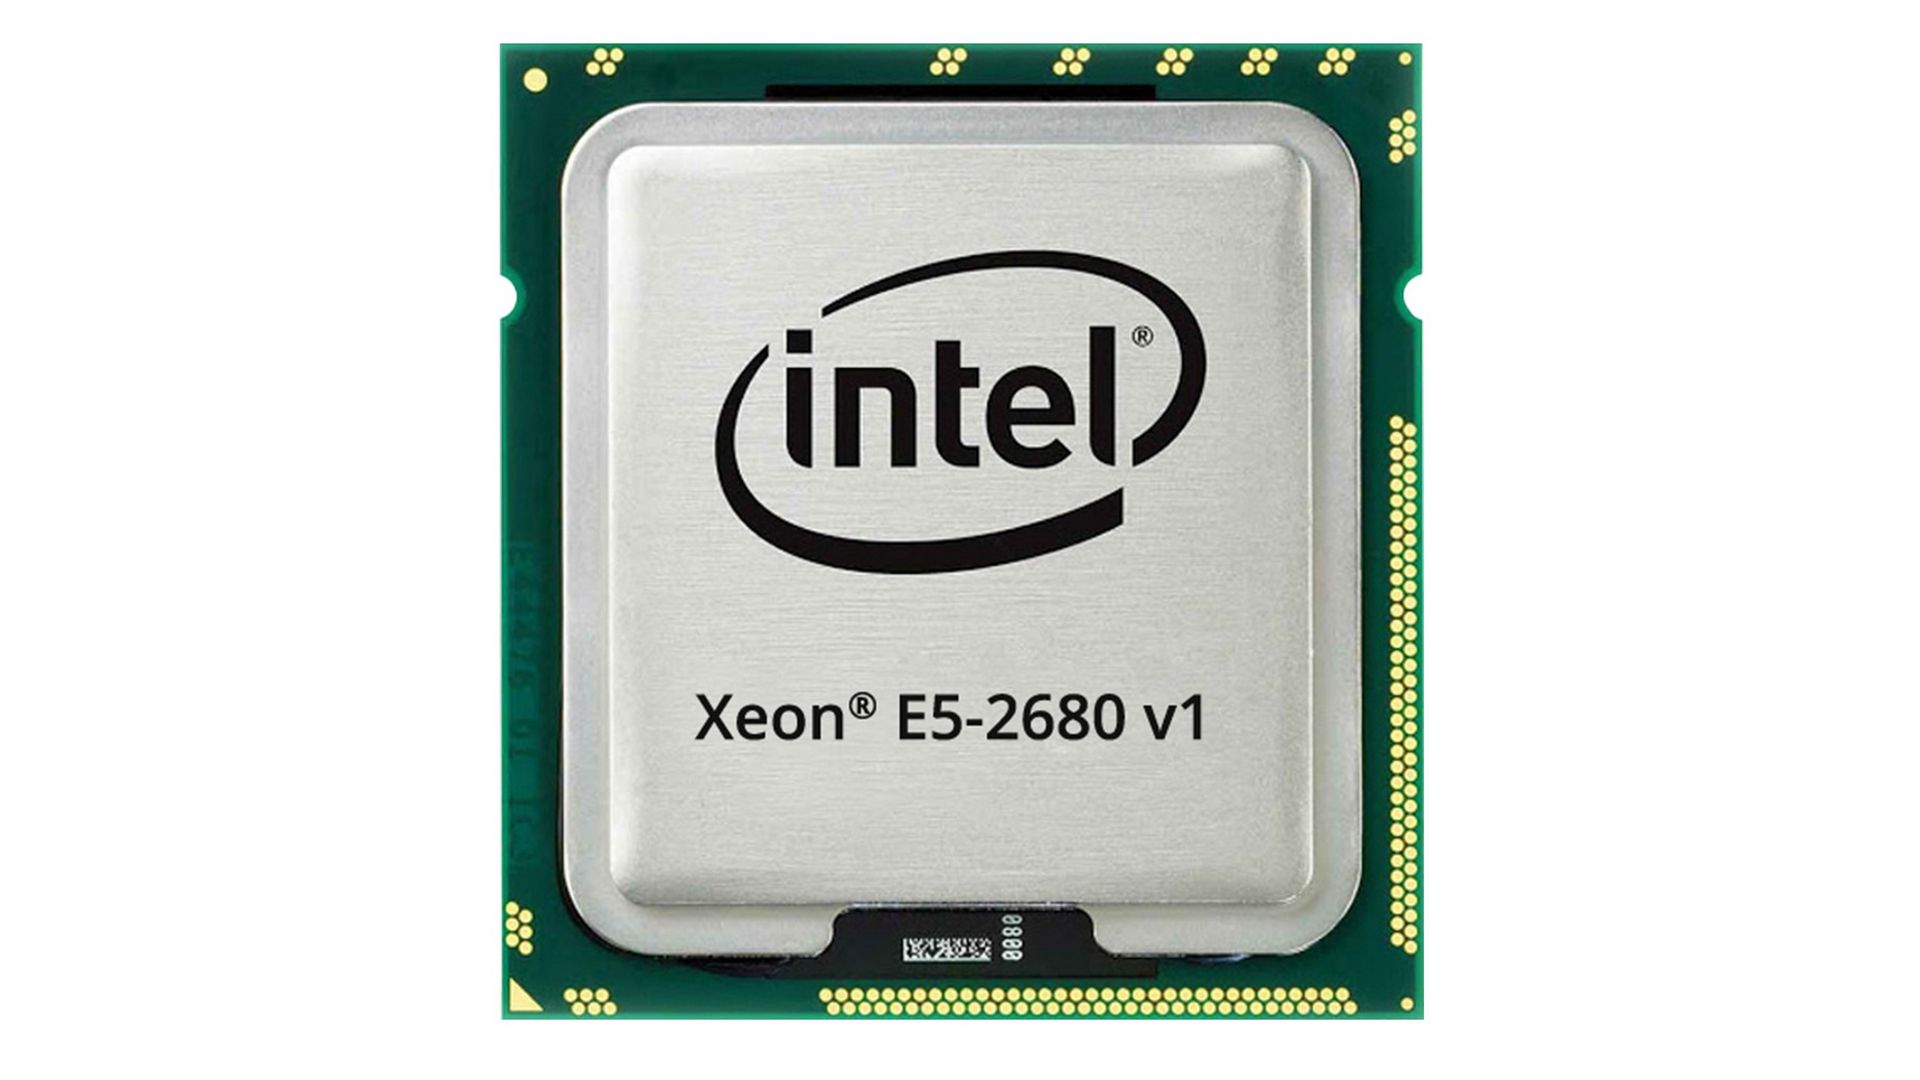 CPU Intel Xeon E5-2680 V1 (2.7GHz Turbo Up To 3.5GHz, 8 nhân 16 luồng, 20MB Cache, LGA 2011) 